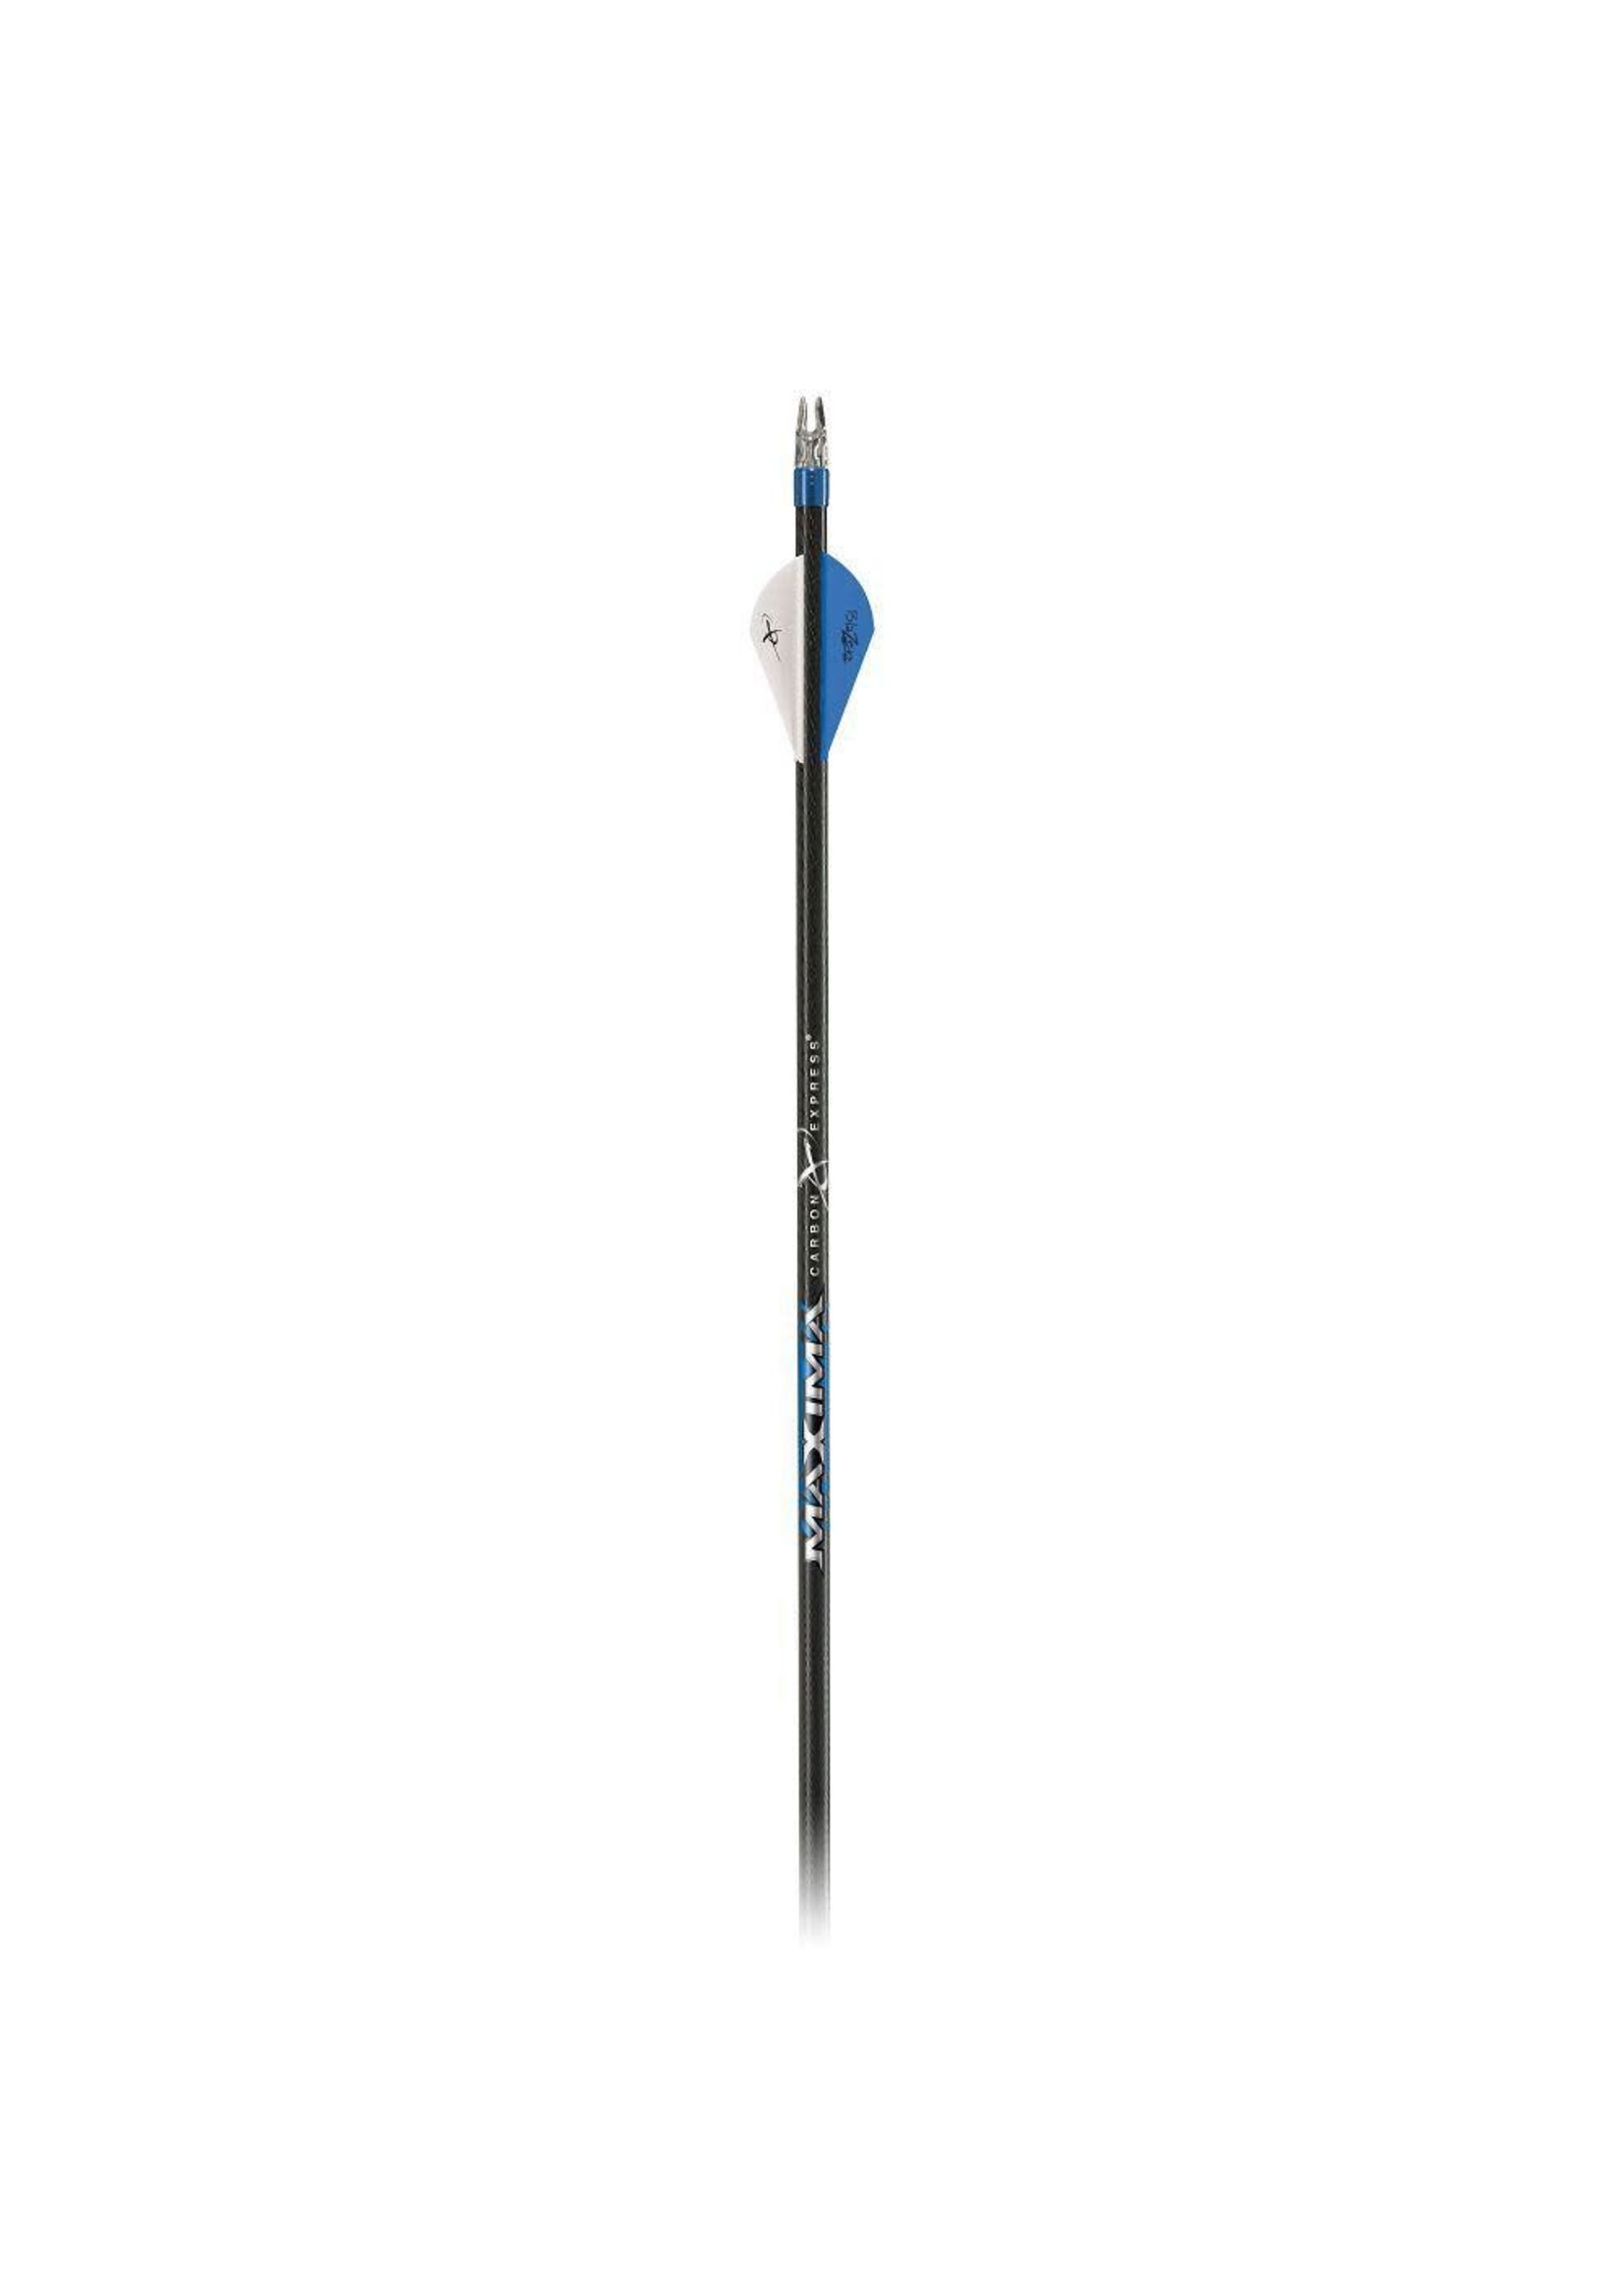 Carbon Express Maxima Blue Streak 350 fletched arrow